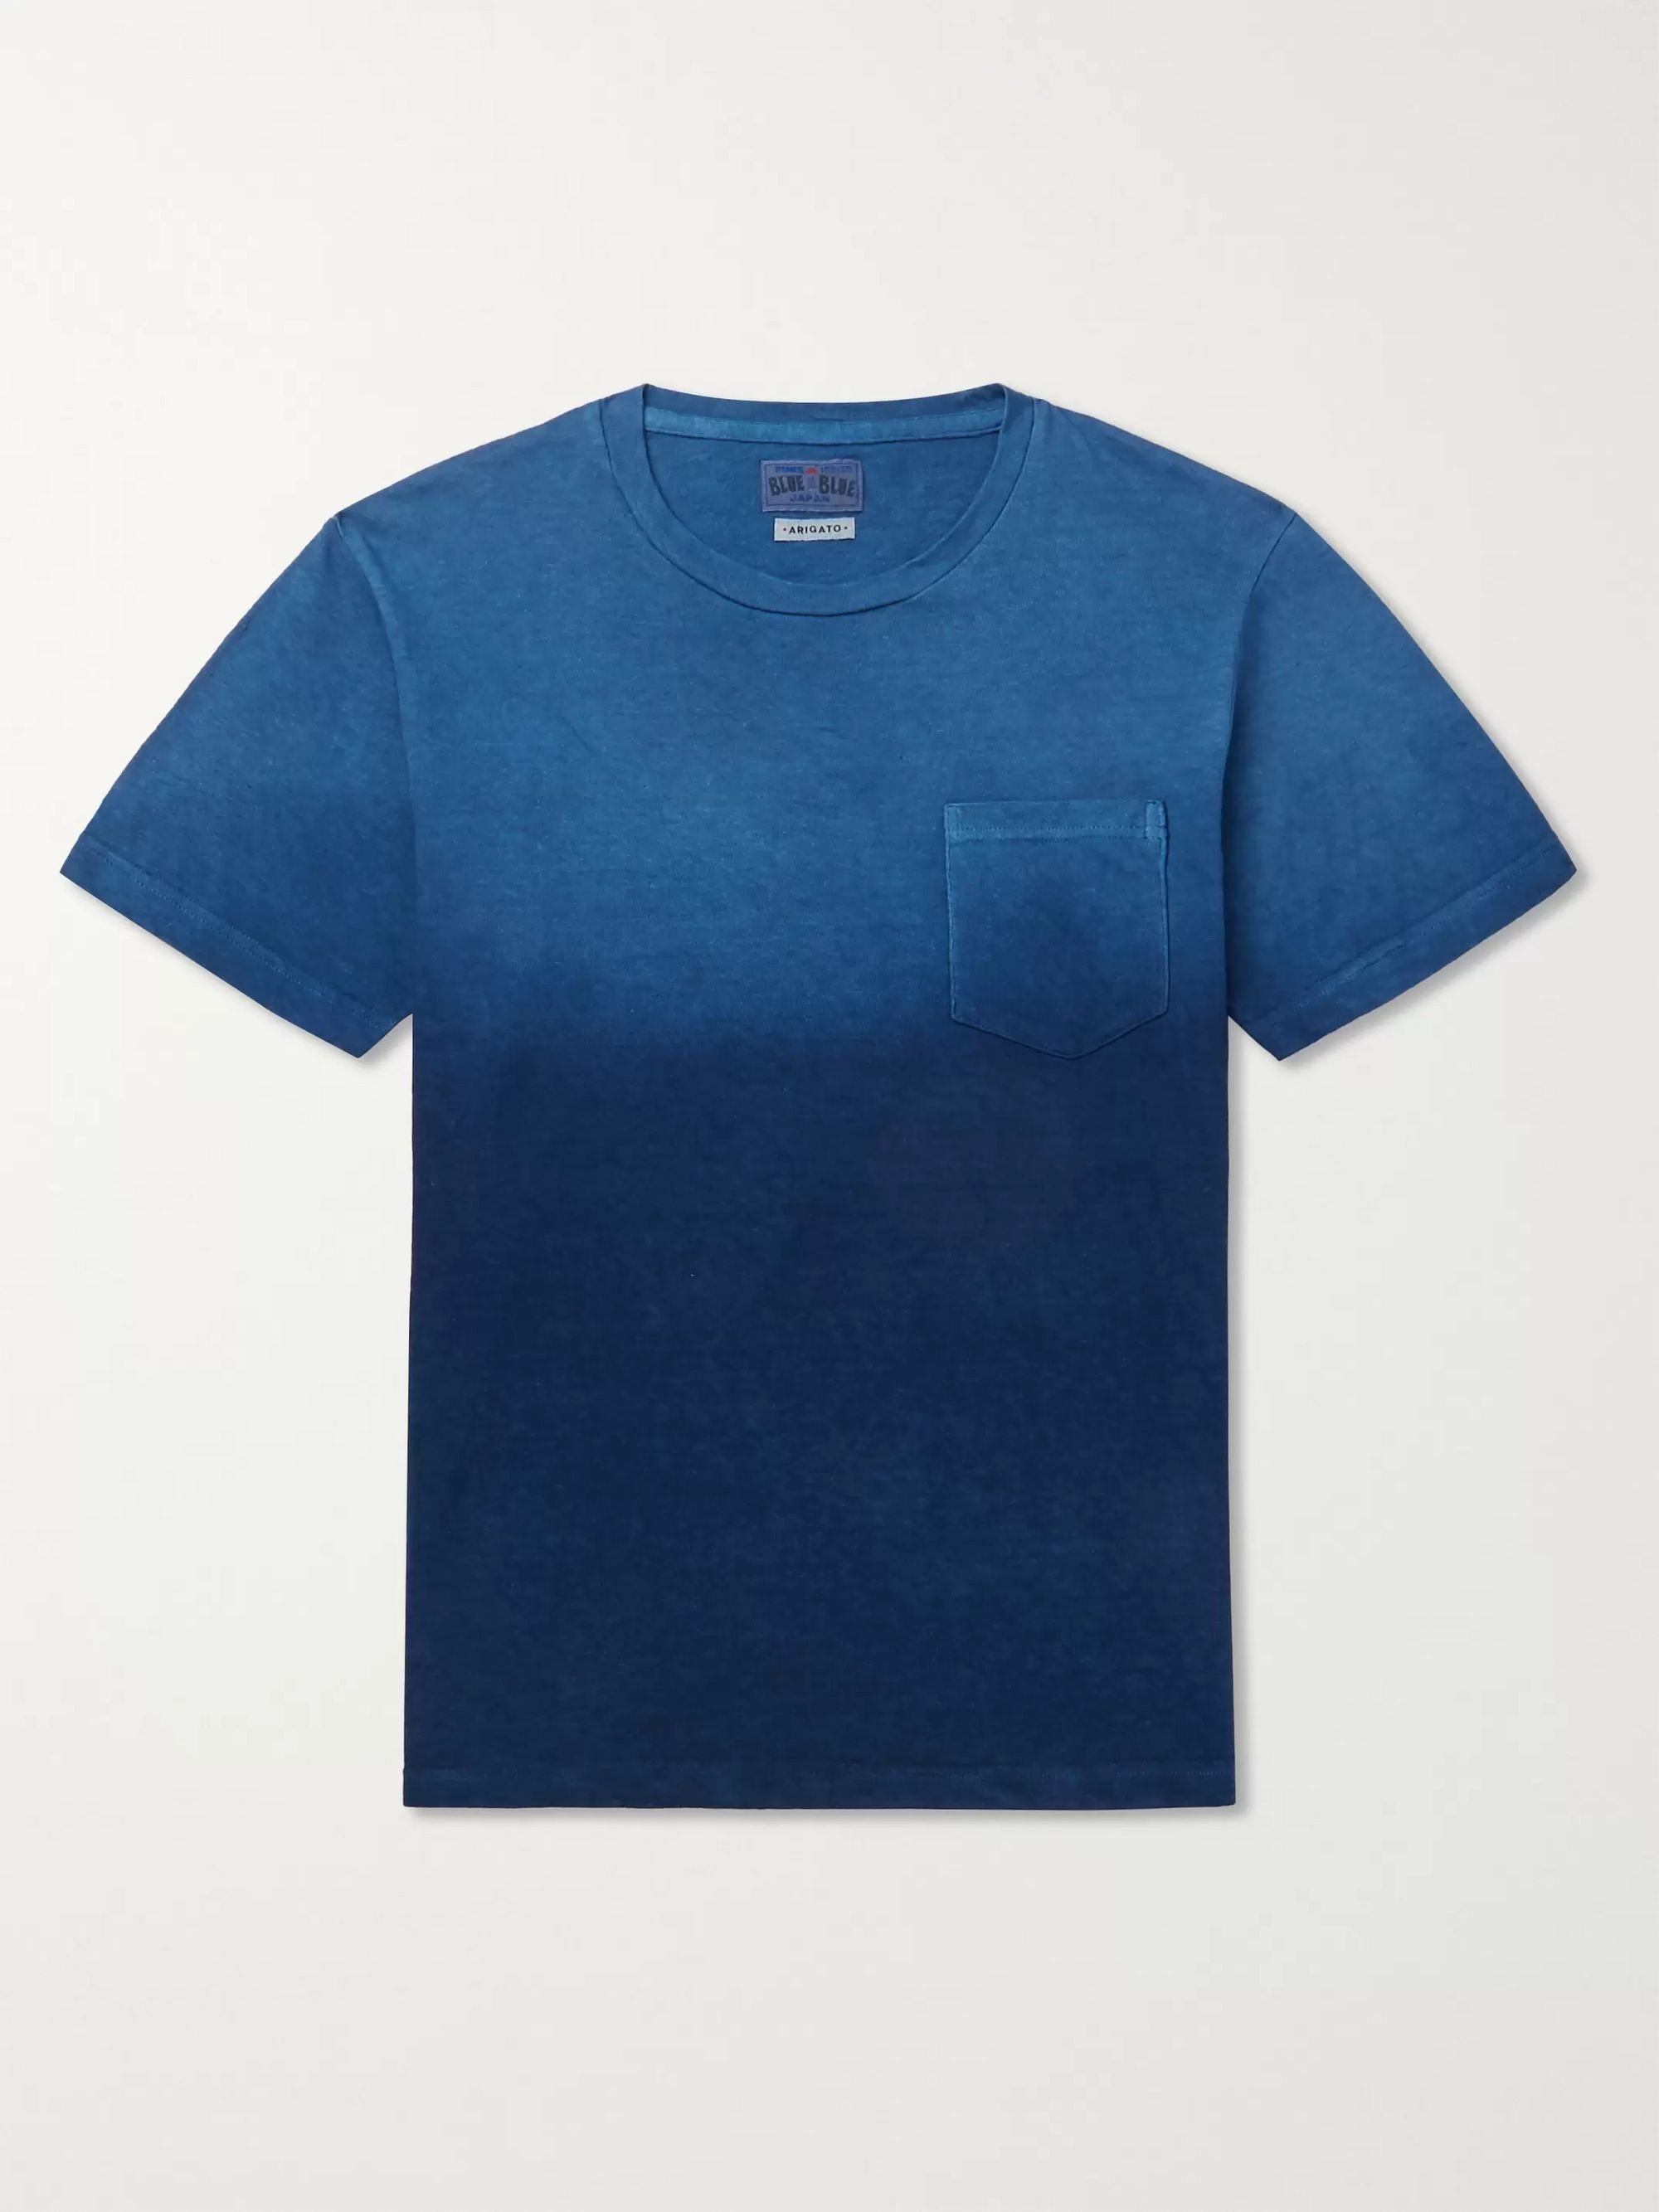 blue jersey t shirt